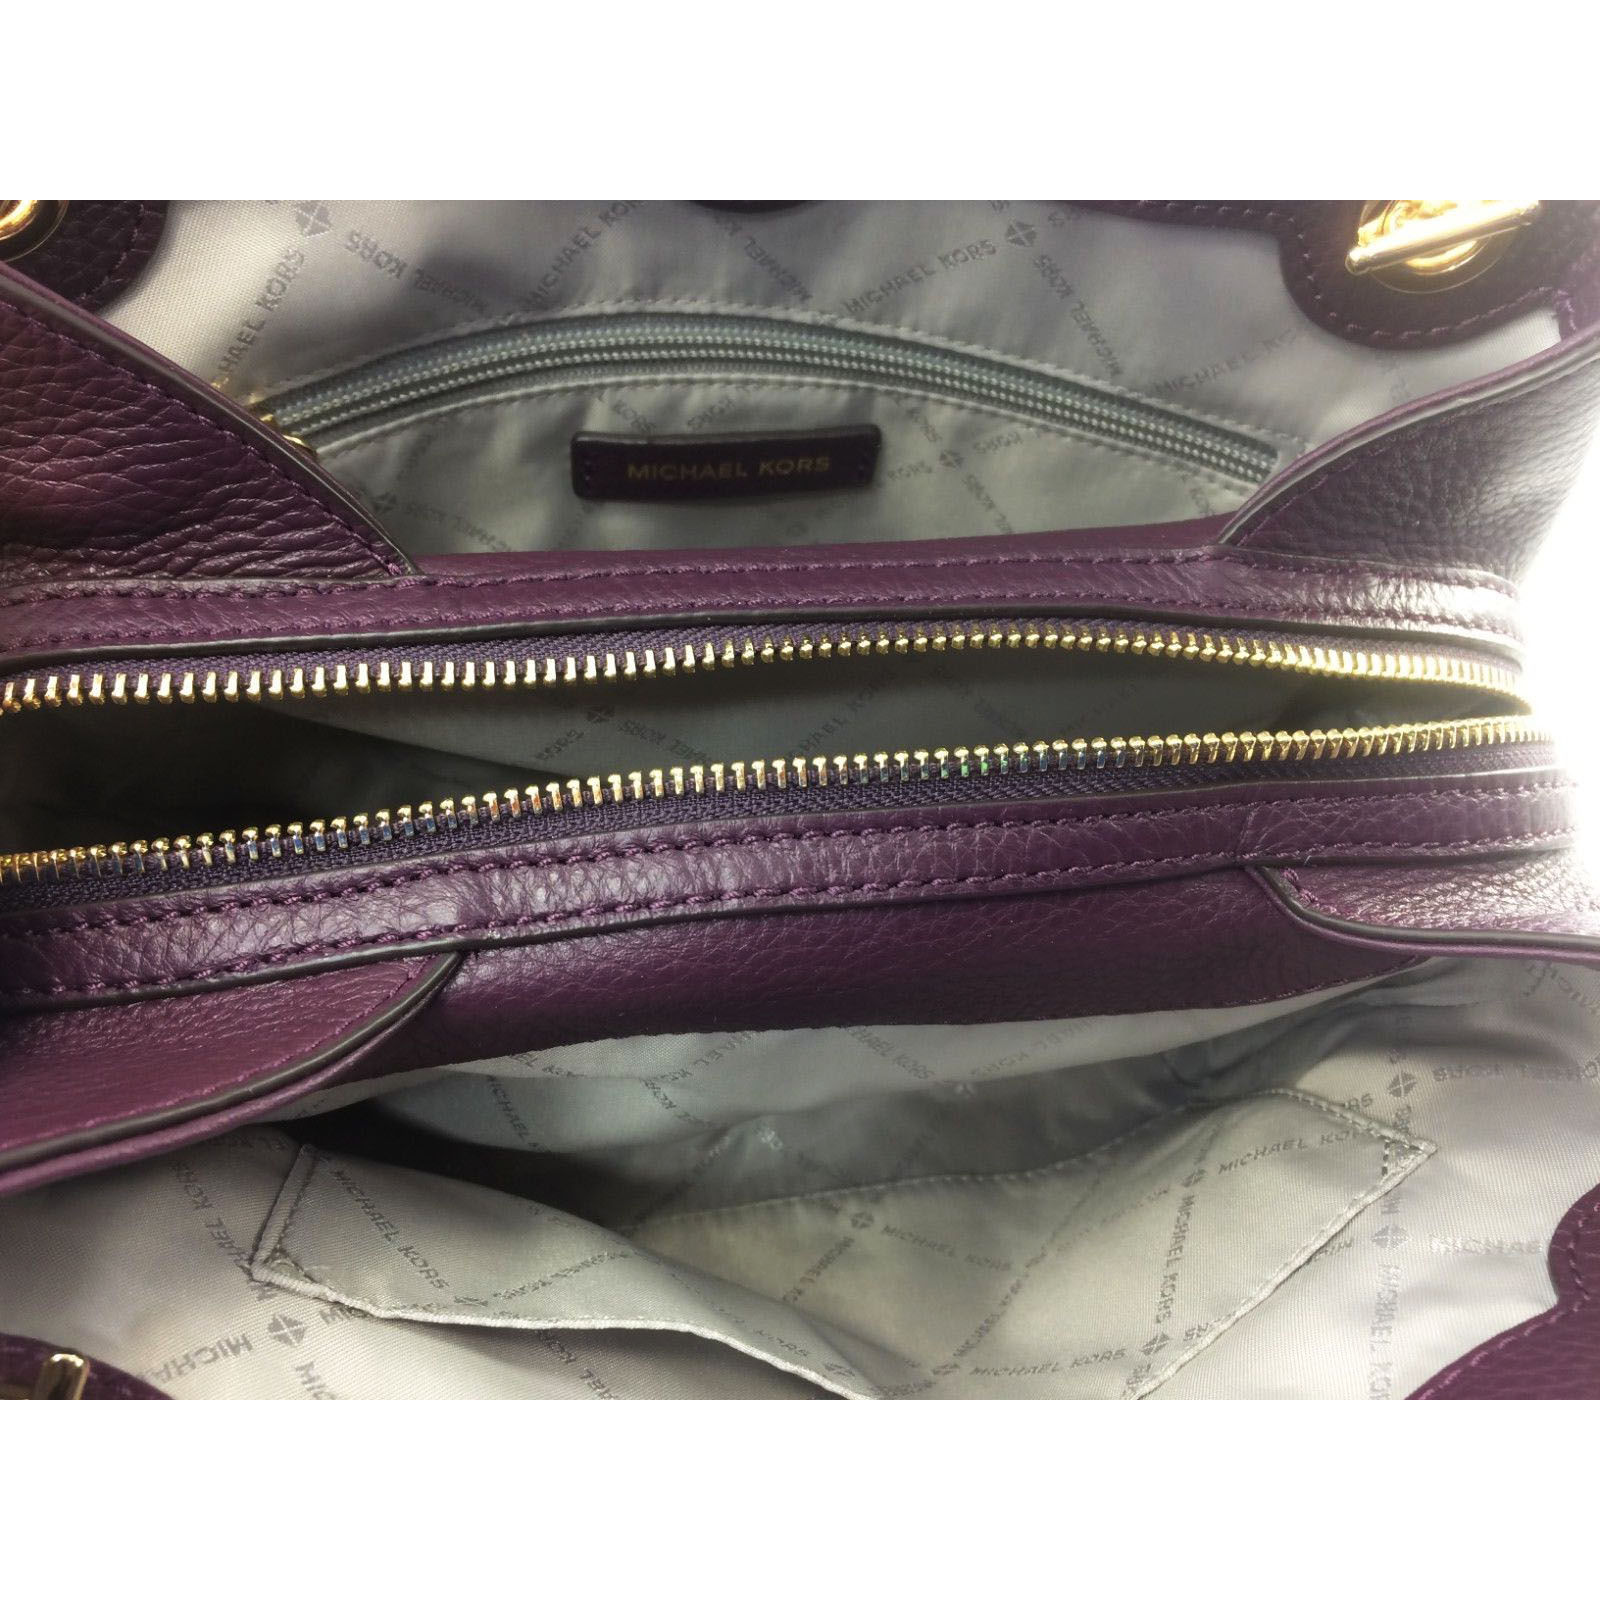 Michael Kors Shoulder Bag Jet Set Medium Chain Messenger Studded Leather Shoulder Bag Damson Purple # 35F8GTTM6L